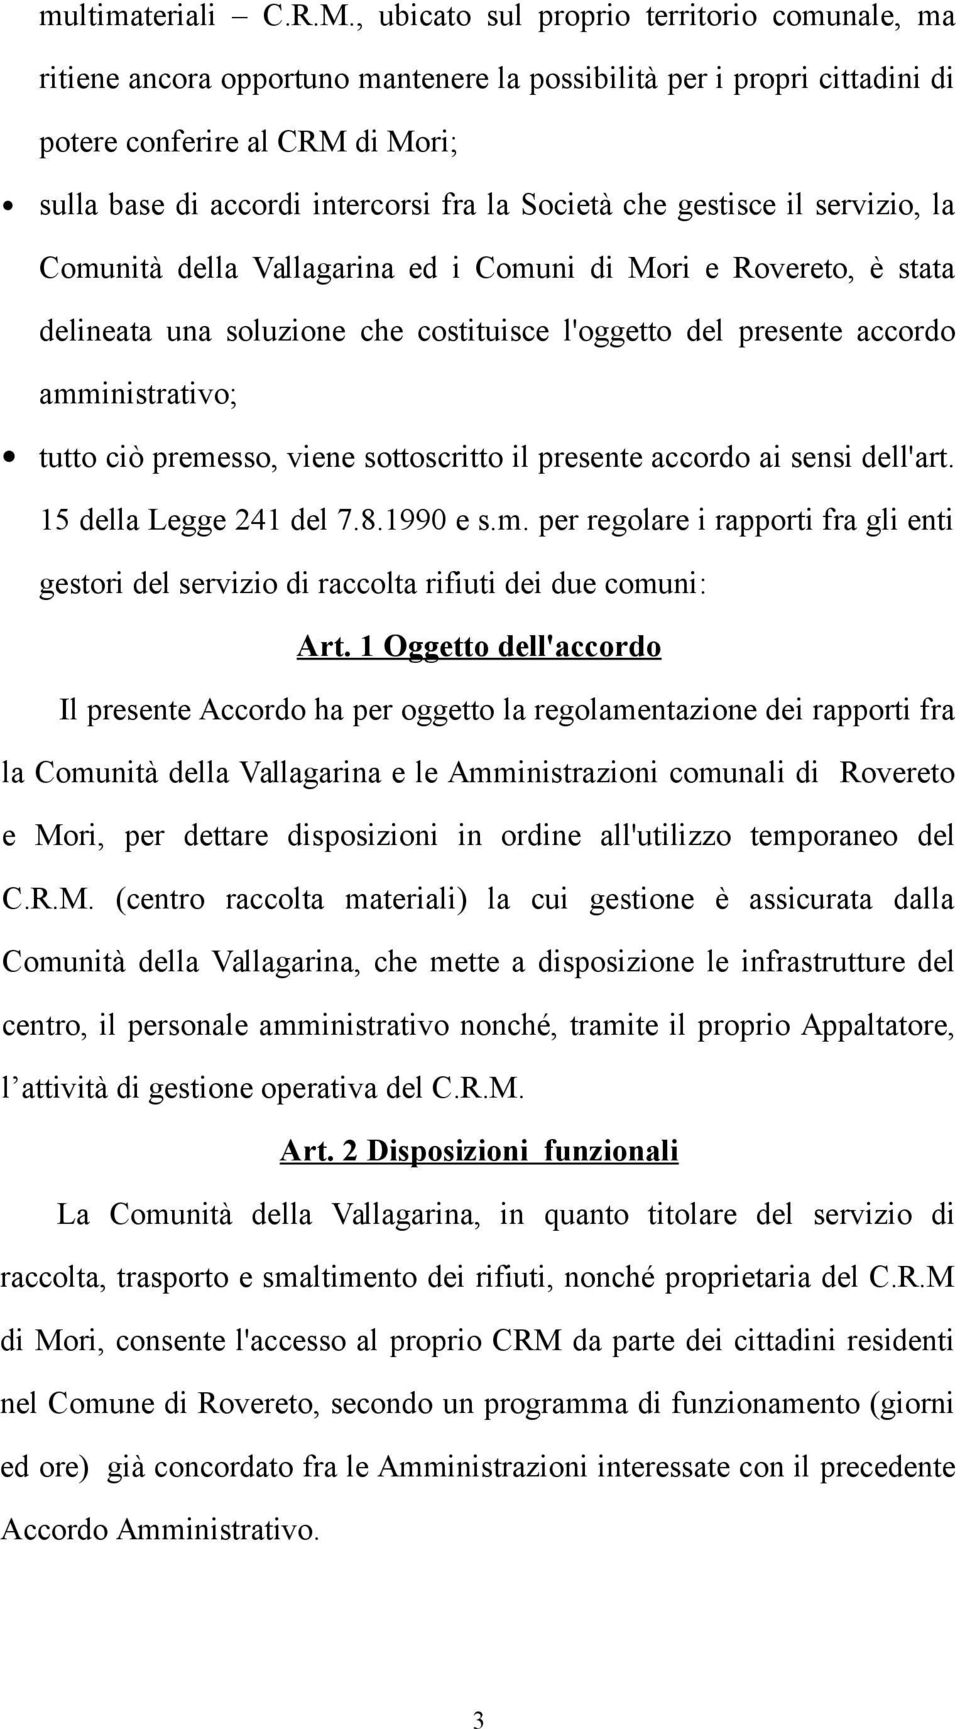 Società che gestisce il servizio, la Comunità della Vallagarina ed i Comuni di Mori e Rovereto, è stata delineata una soluzione che costituisce l'oggetto del presente accordo amministrativo; tutto